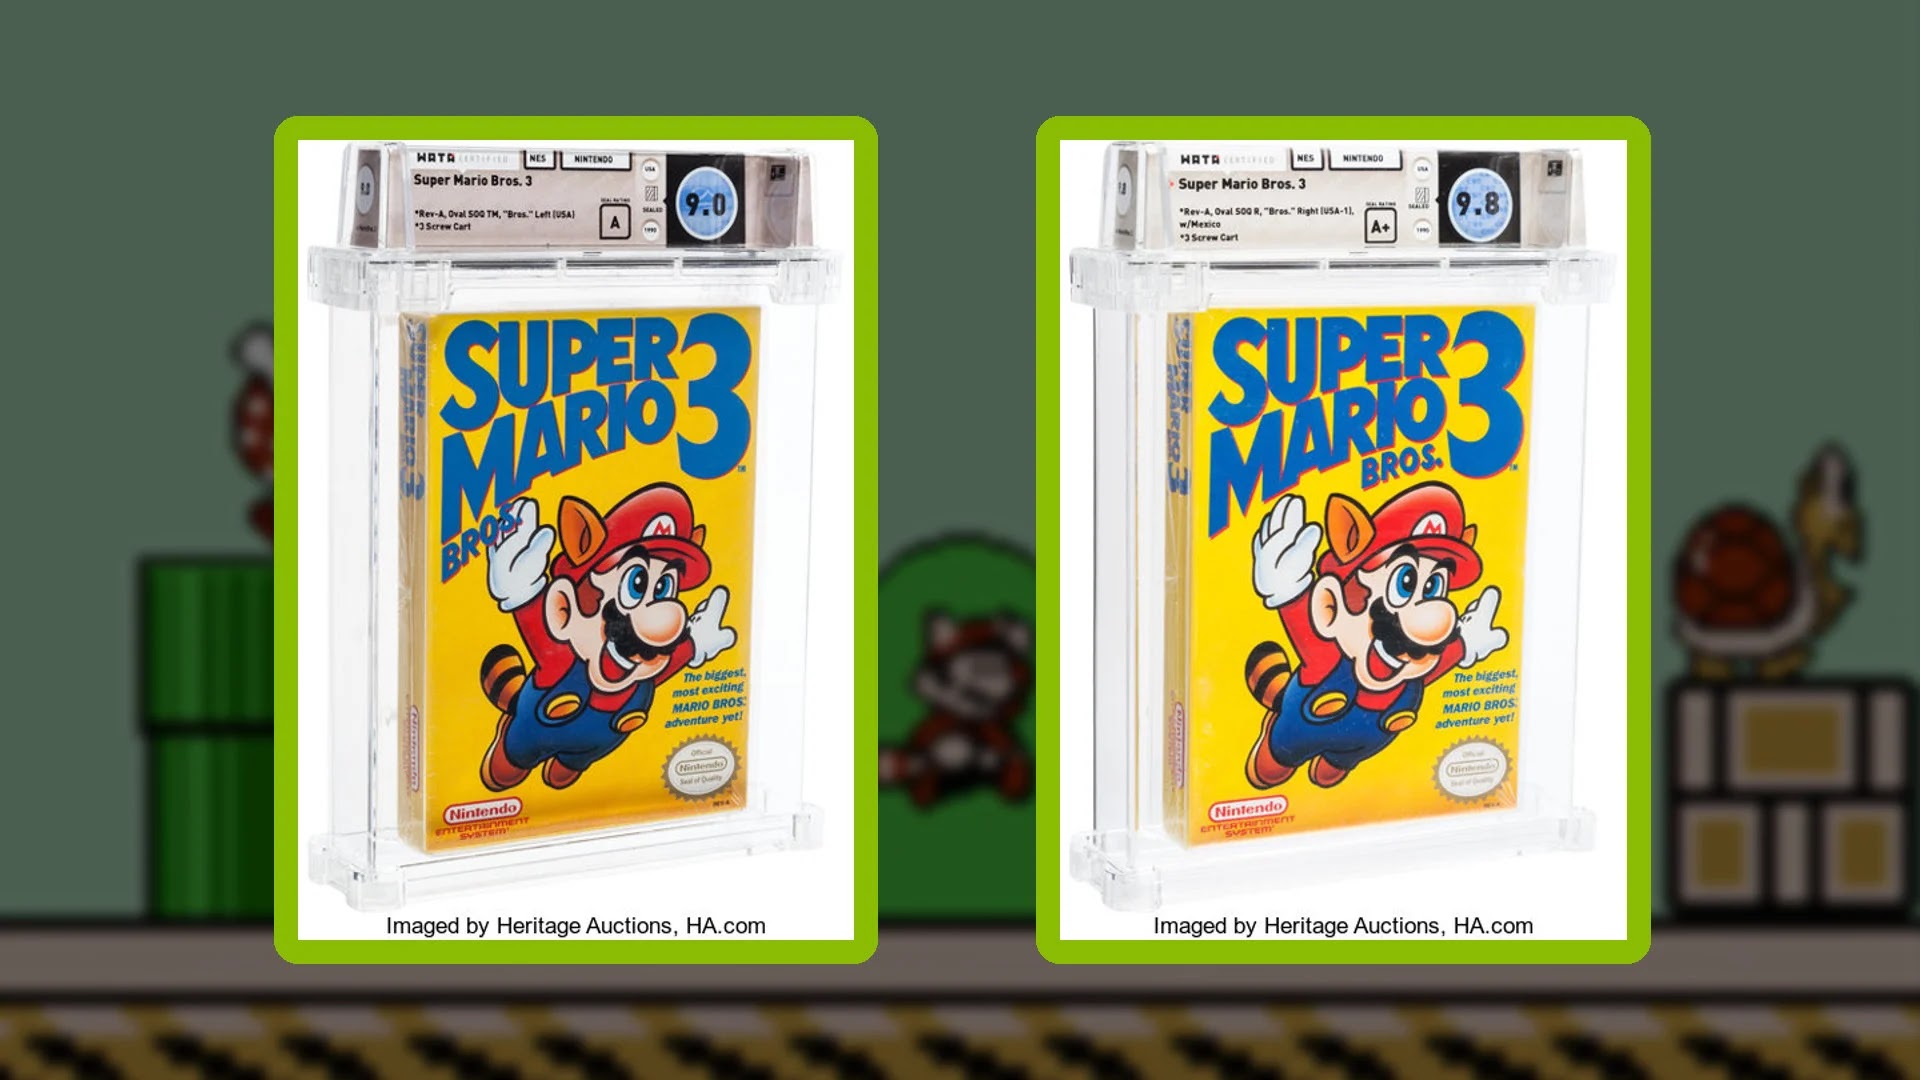 Quanto mais fico velho mais quero jogar games antigos - Uma análise rápida  de Super Mario Bros. 3 - Duas Torres